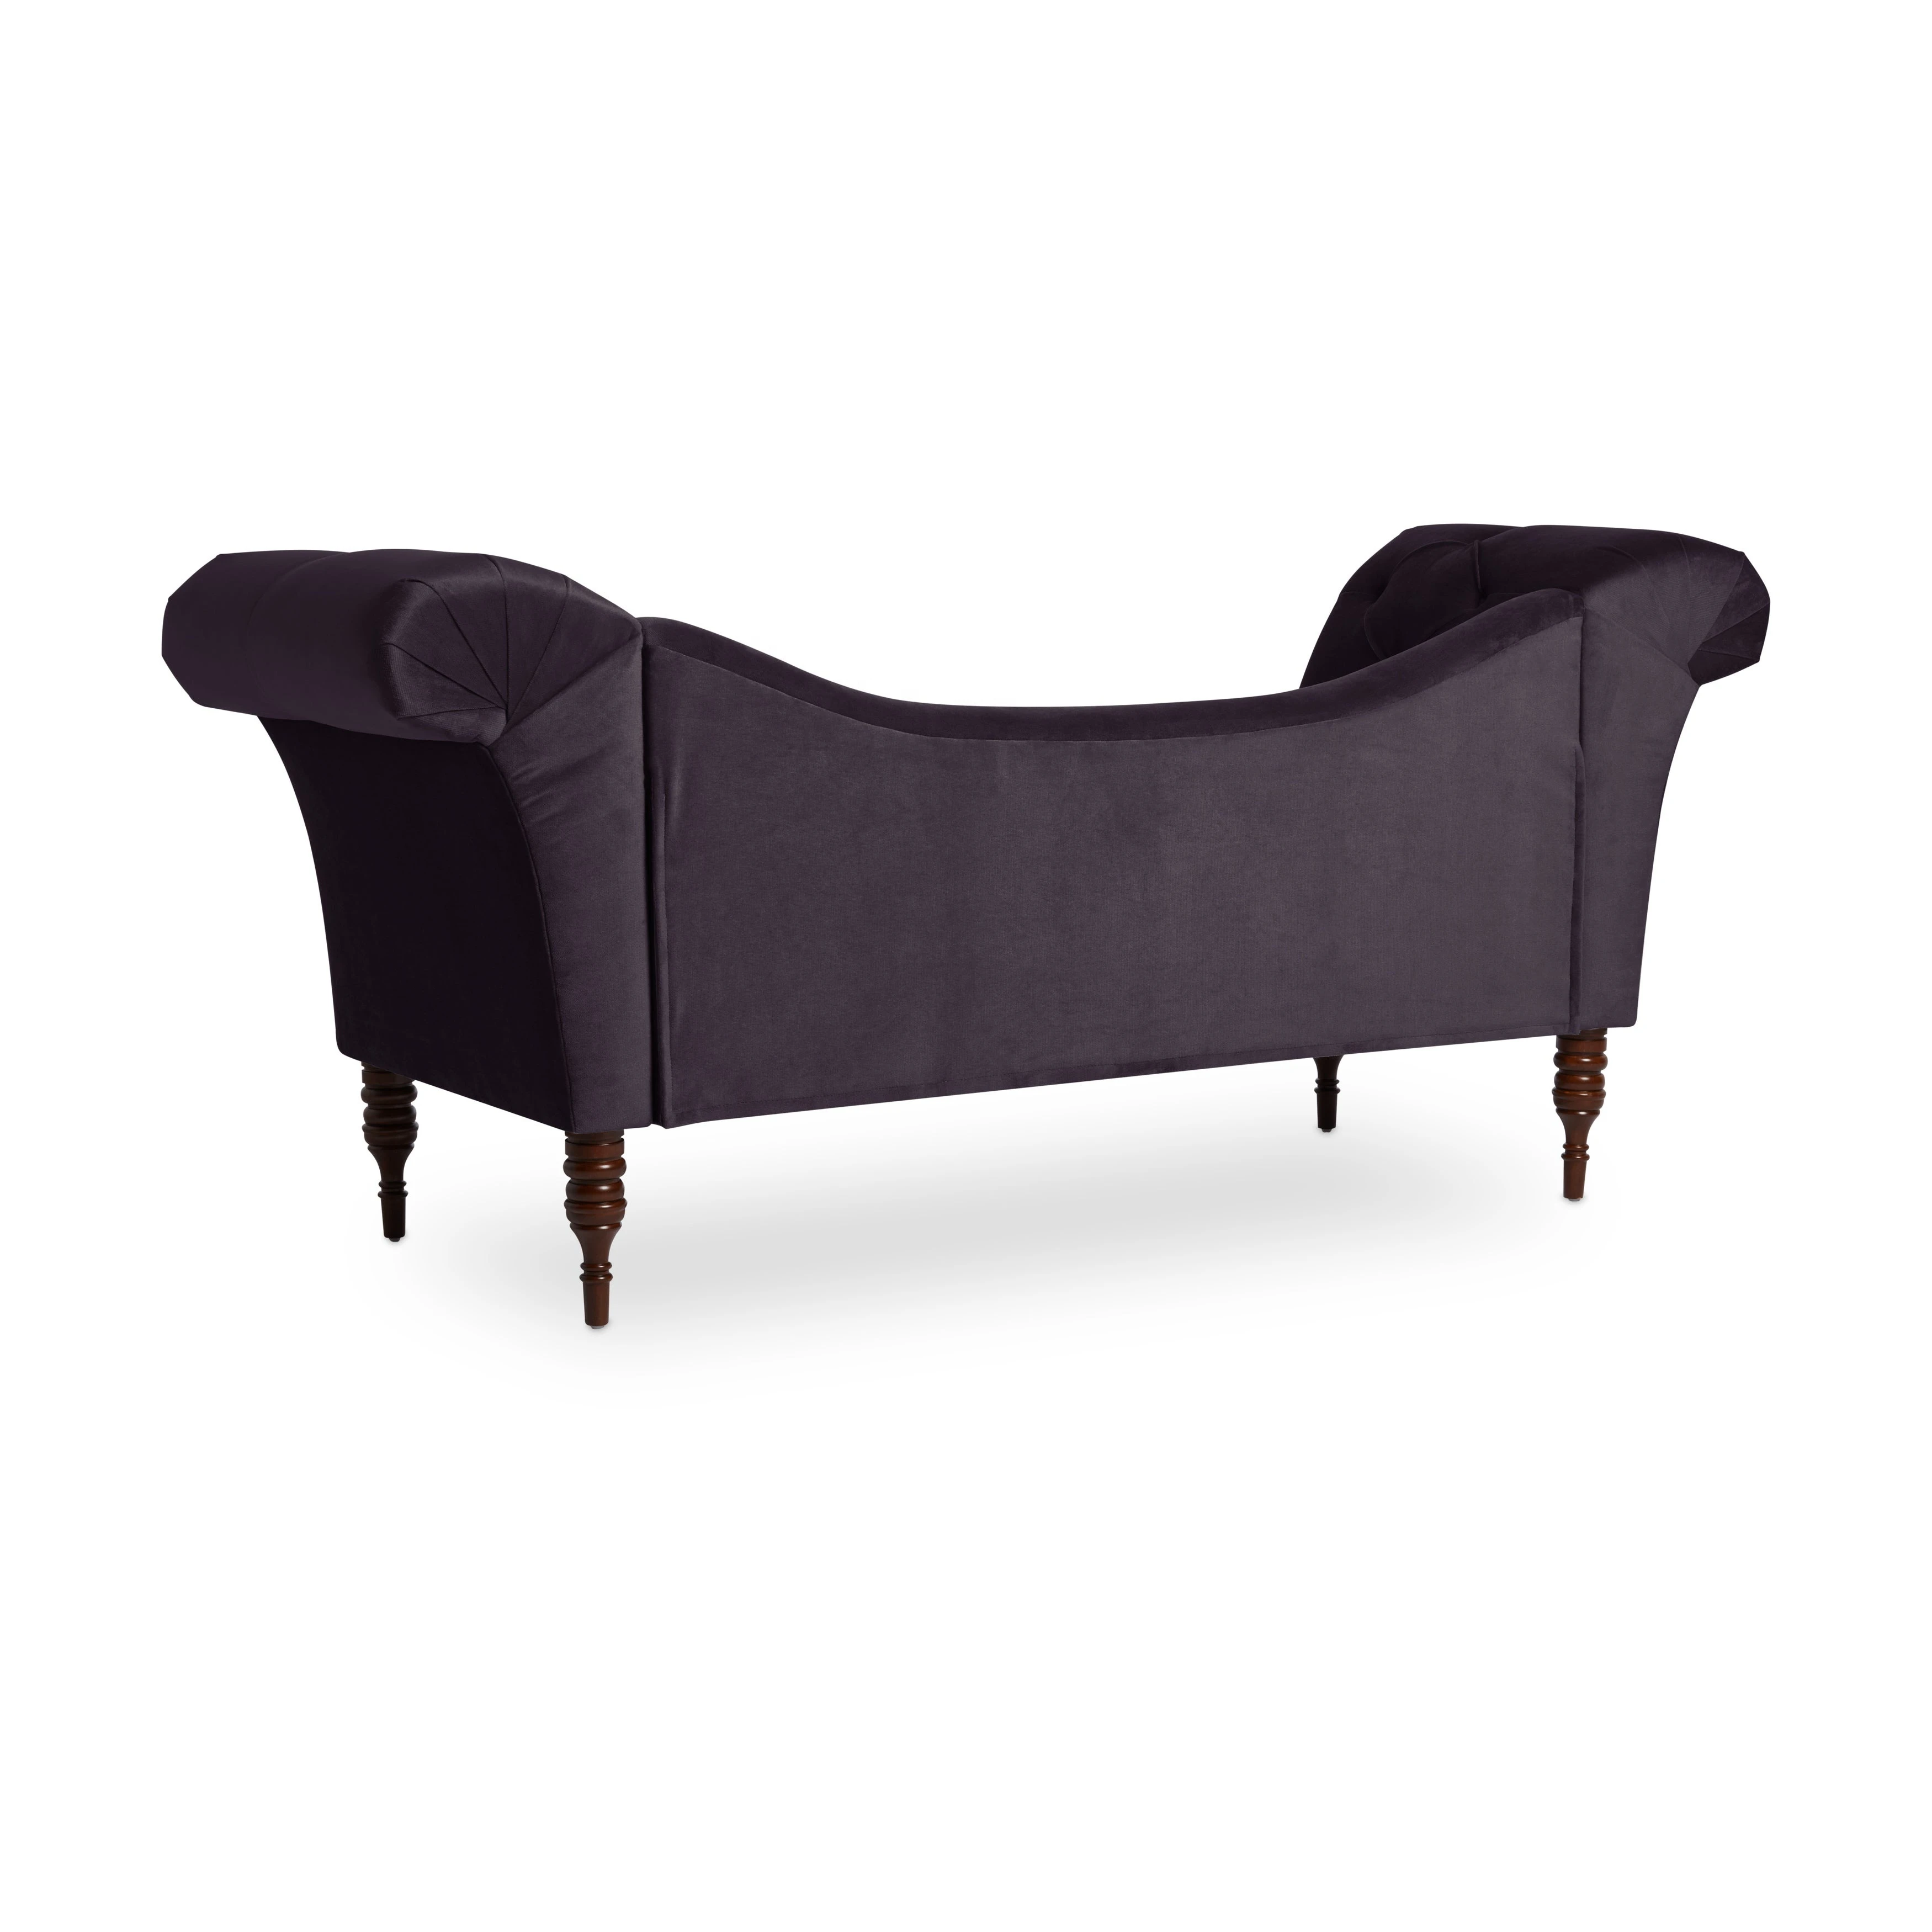 Velvet Fabric Most Popular Products High-Grade Living Room Furniture Modern Black Velvet Cover Sofa